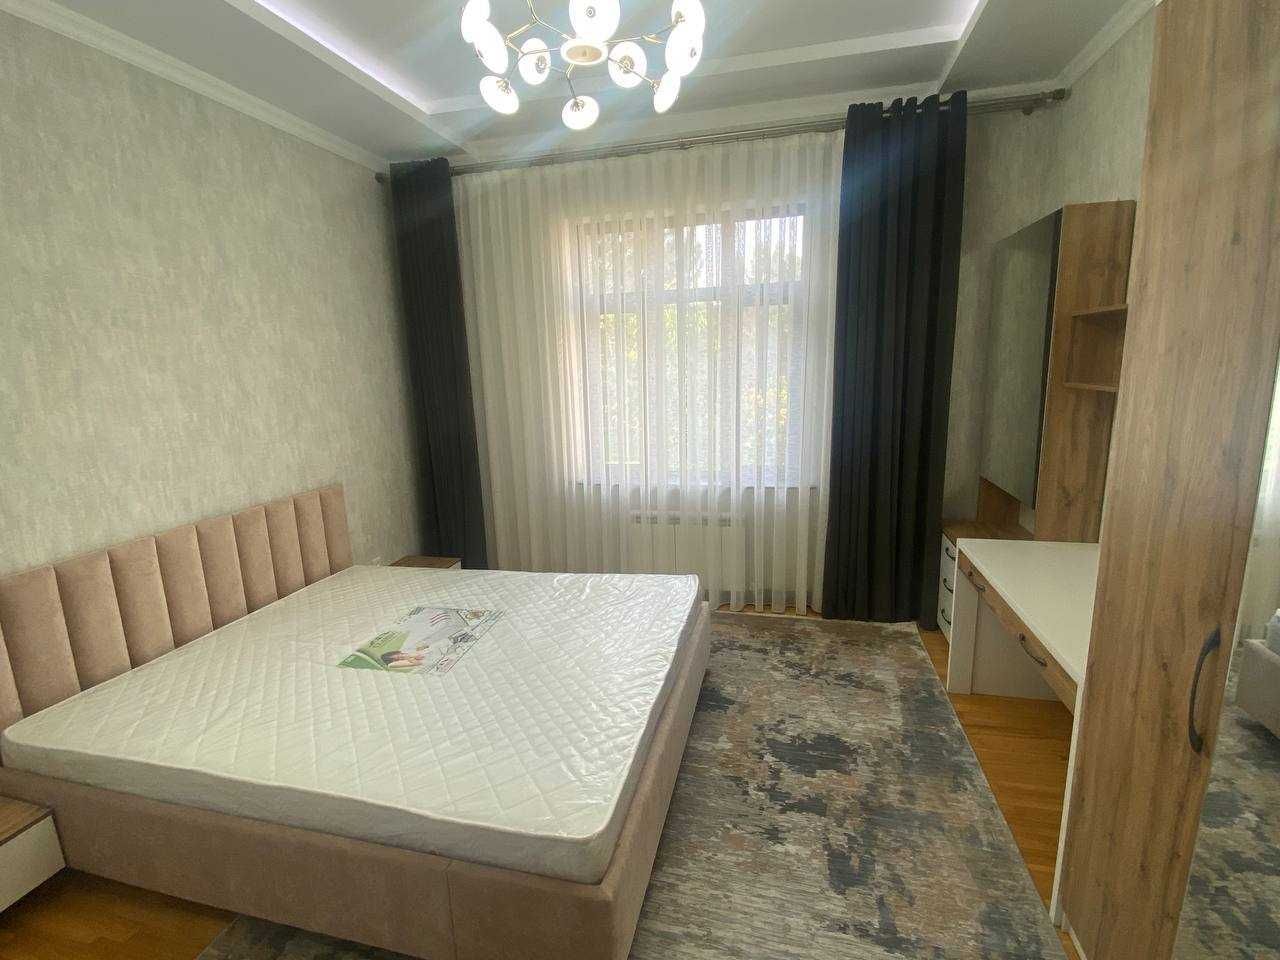 (339) Дом на Пушкина 9 комнат после ремонта